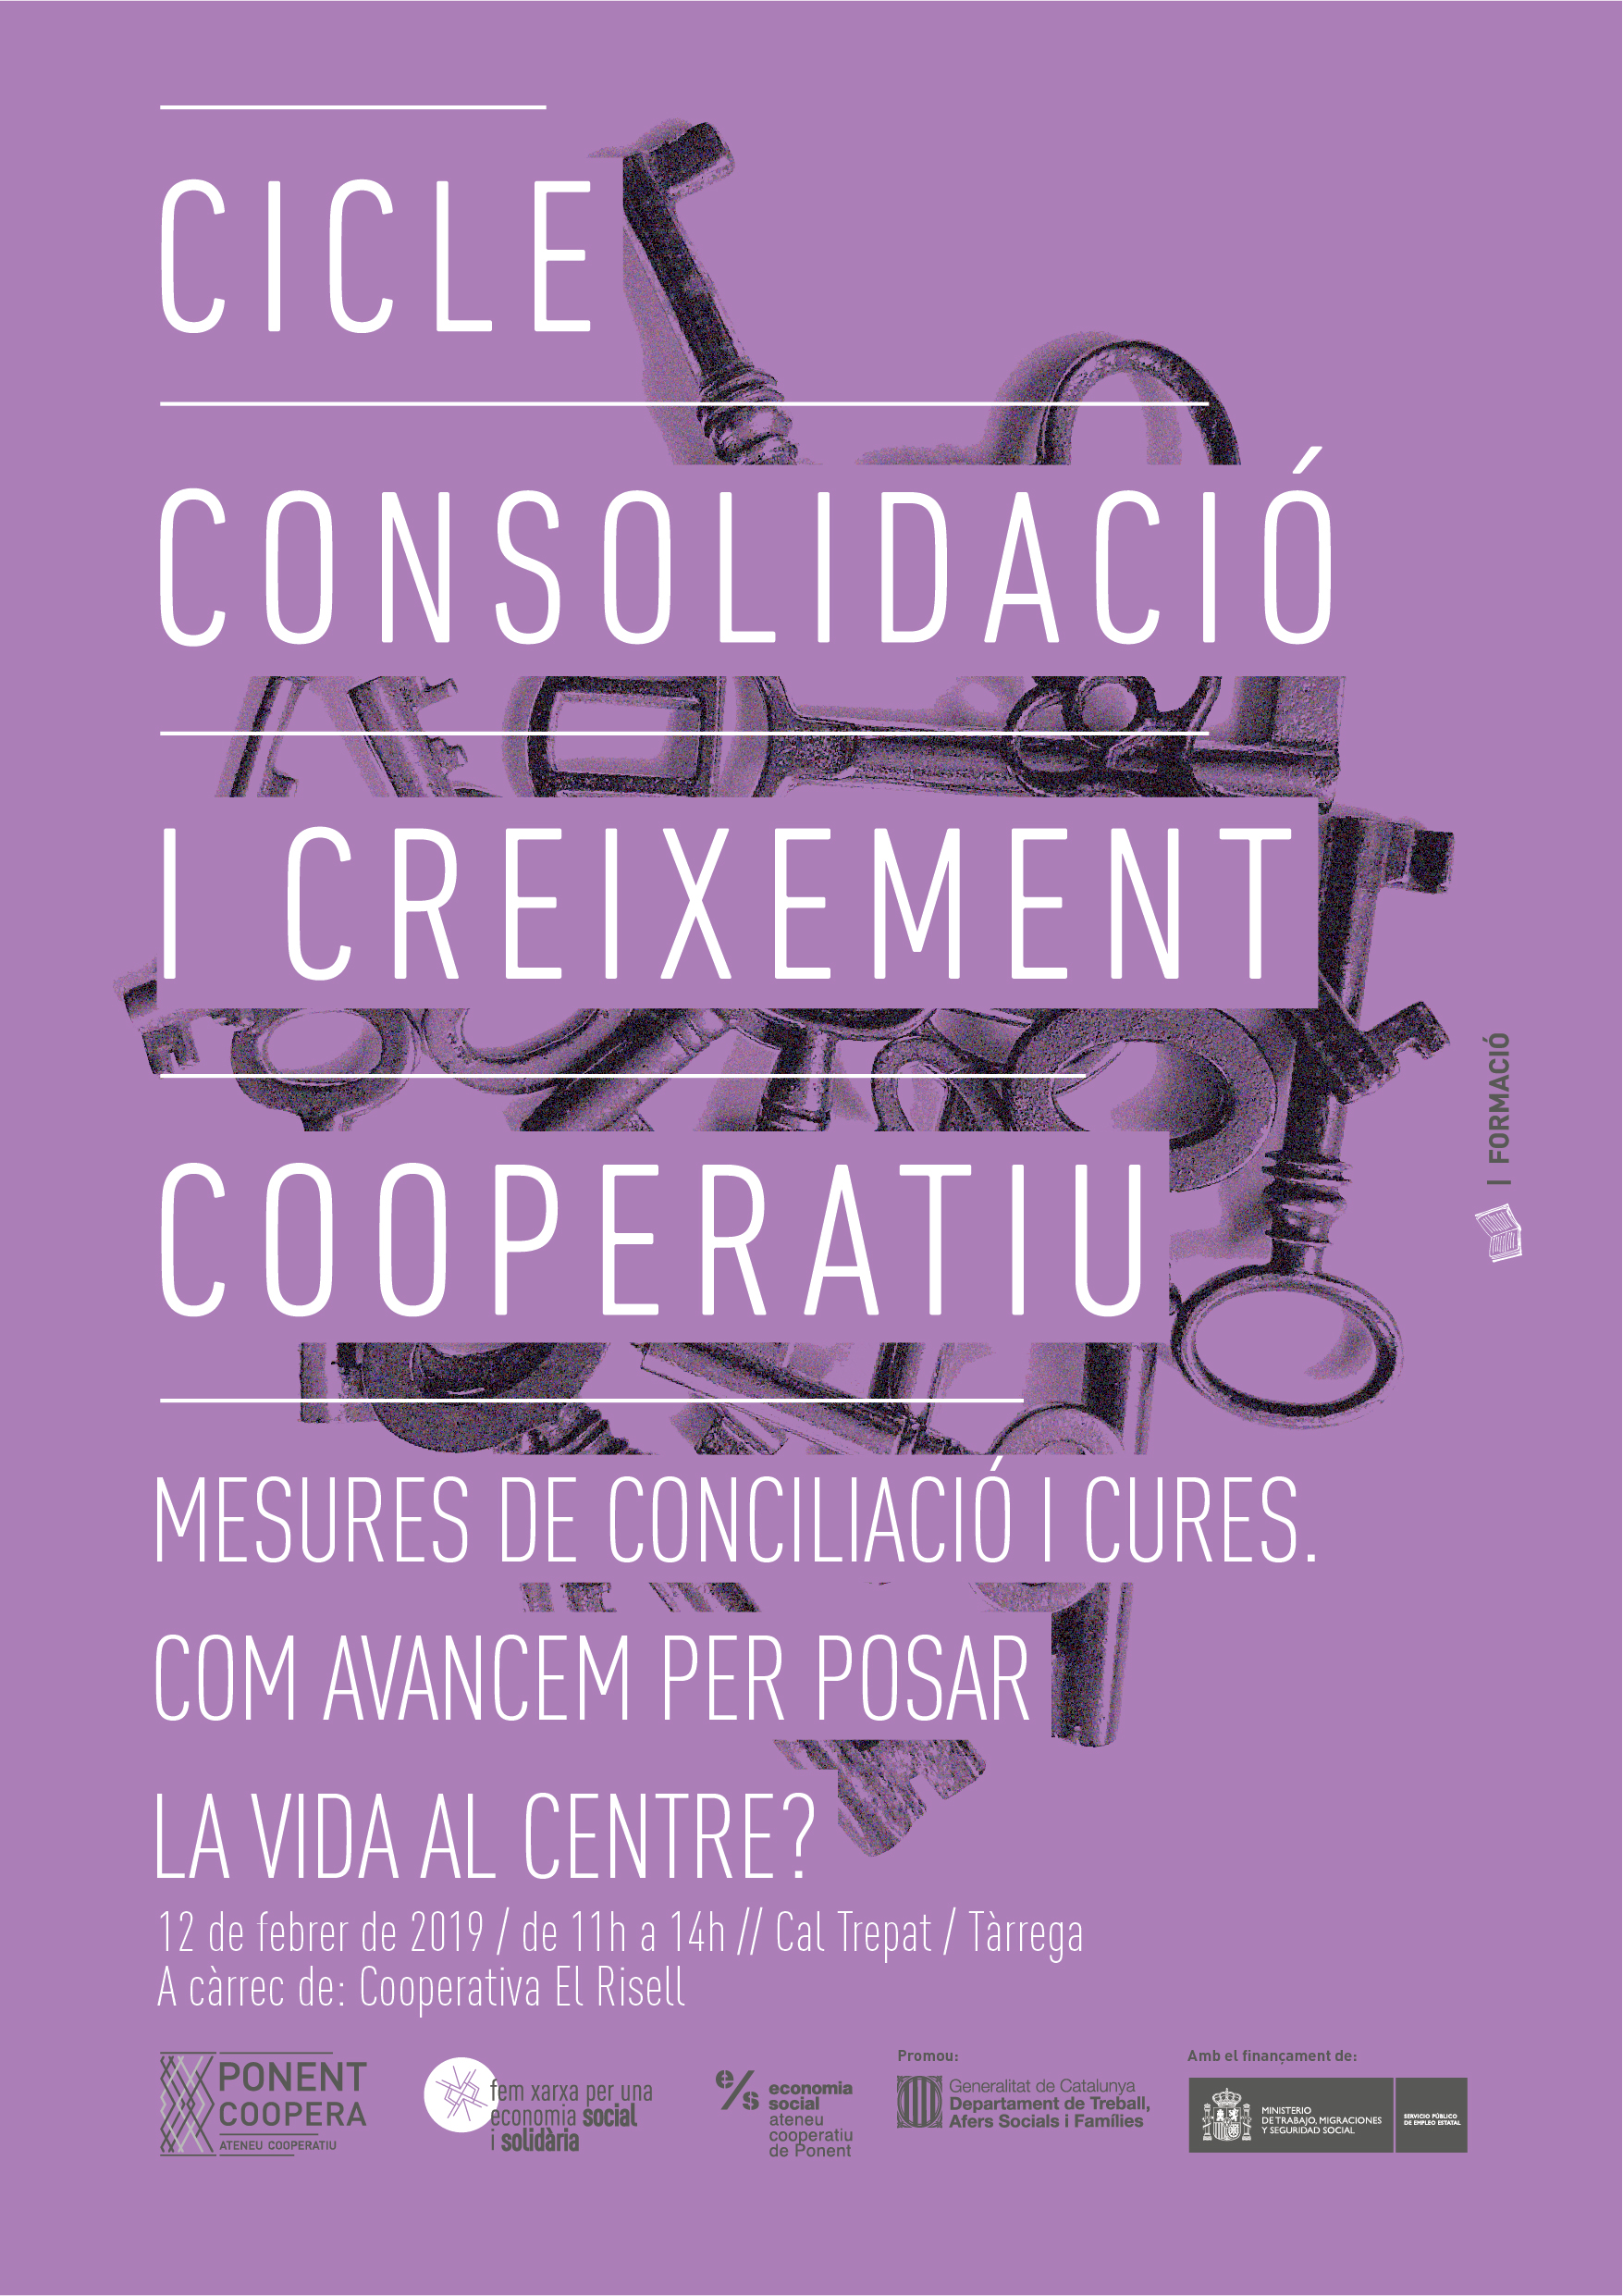 Cicle de Consolidació i Creixement Cooperatiu | Mesures de conciliació i cures